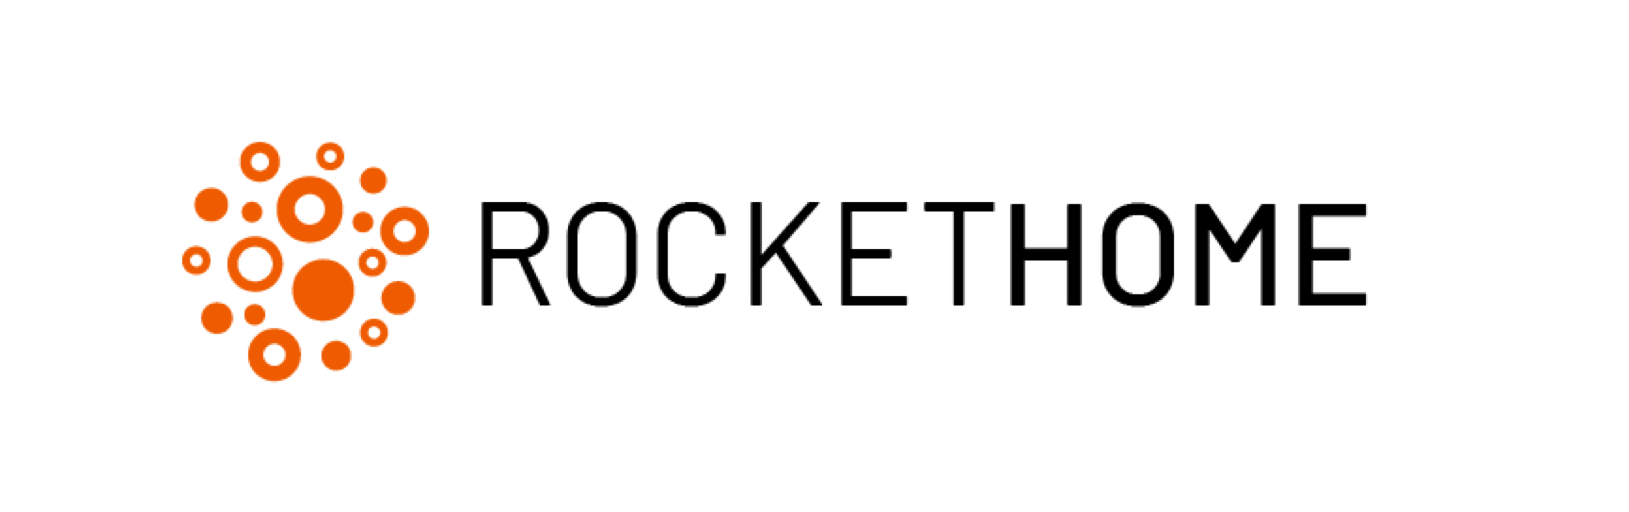 rockethome-logo